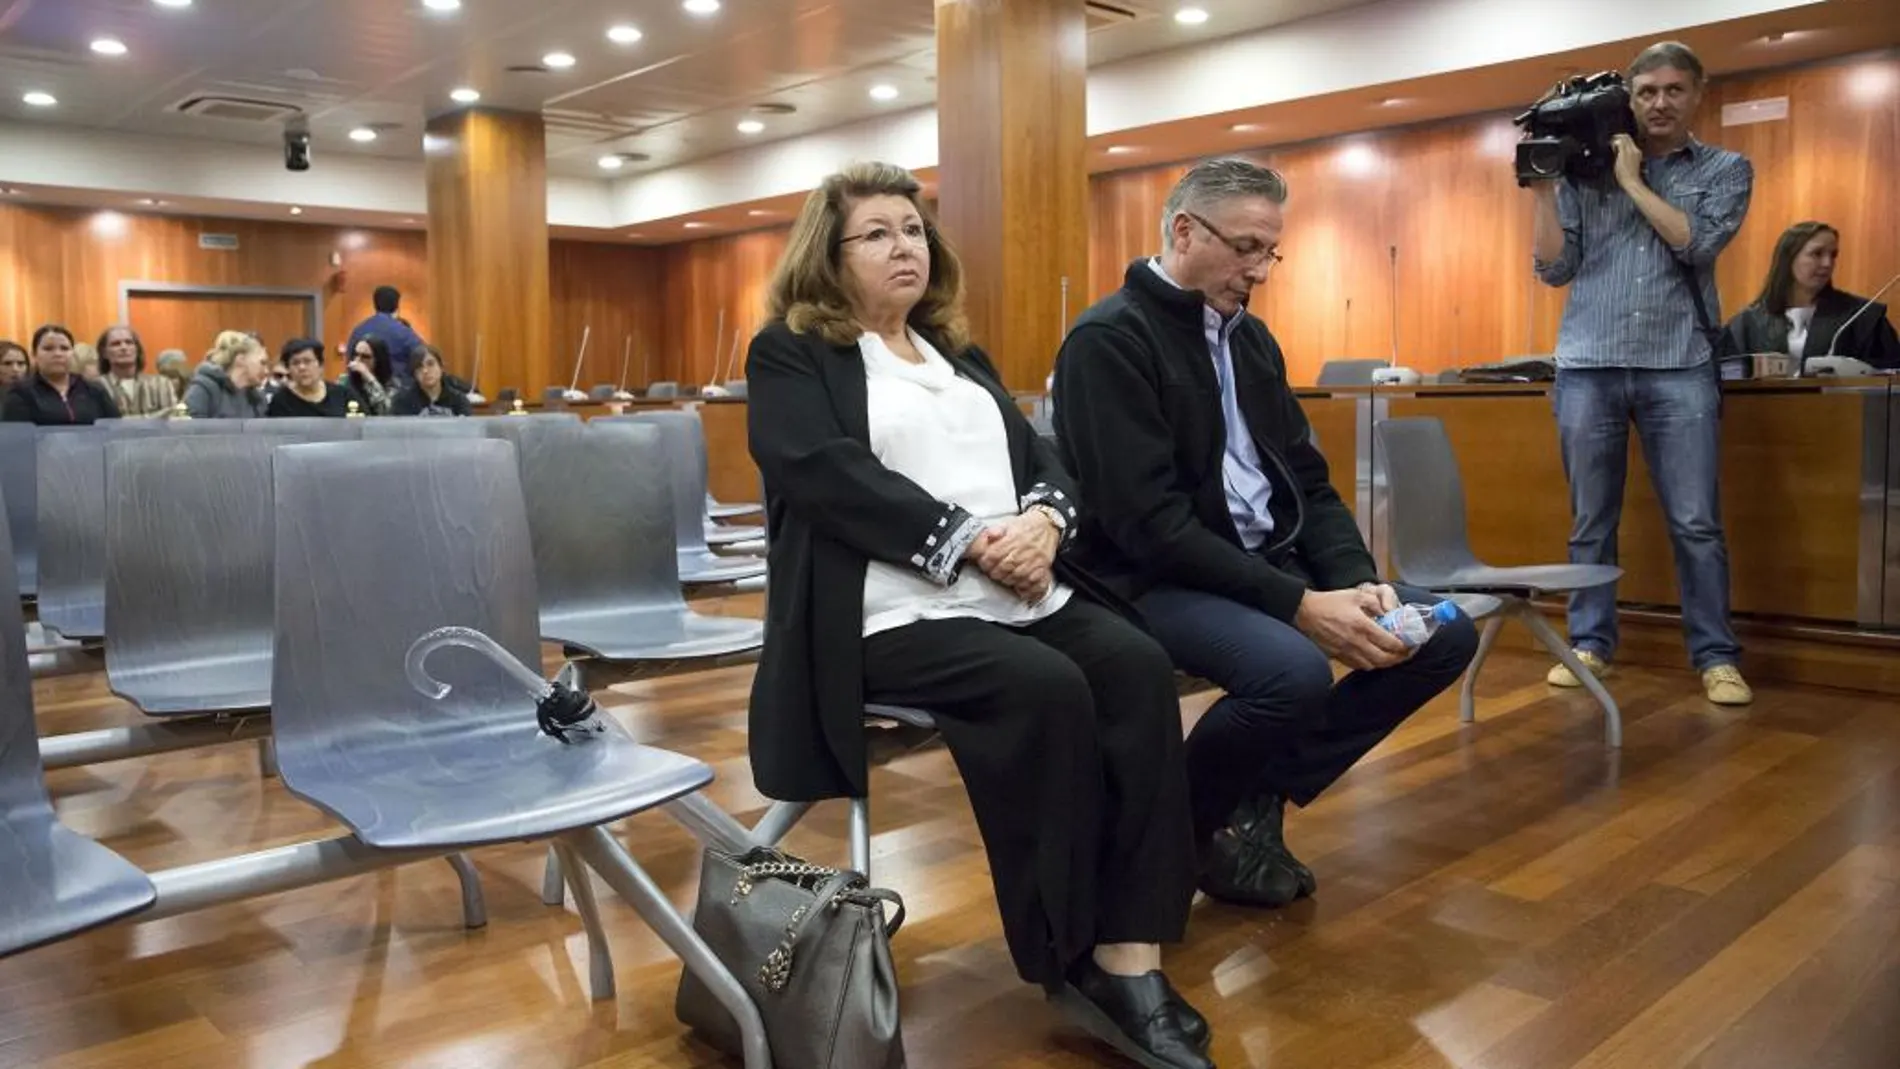 La presidenta de la protectora Parque Animal de Torremolinos (Málaga), Carmen Marín, junto al otro procesado, Felipe Barco, durante el juicio /Efe